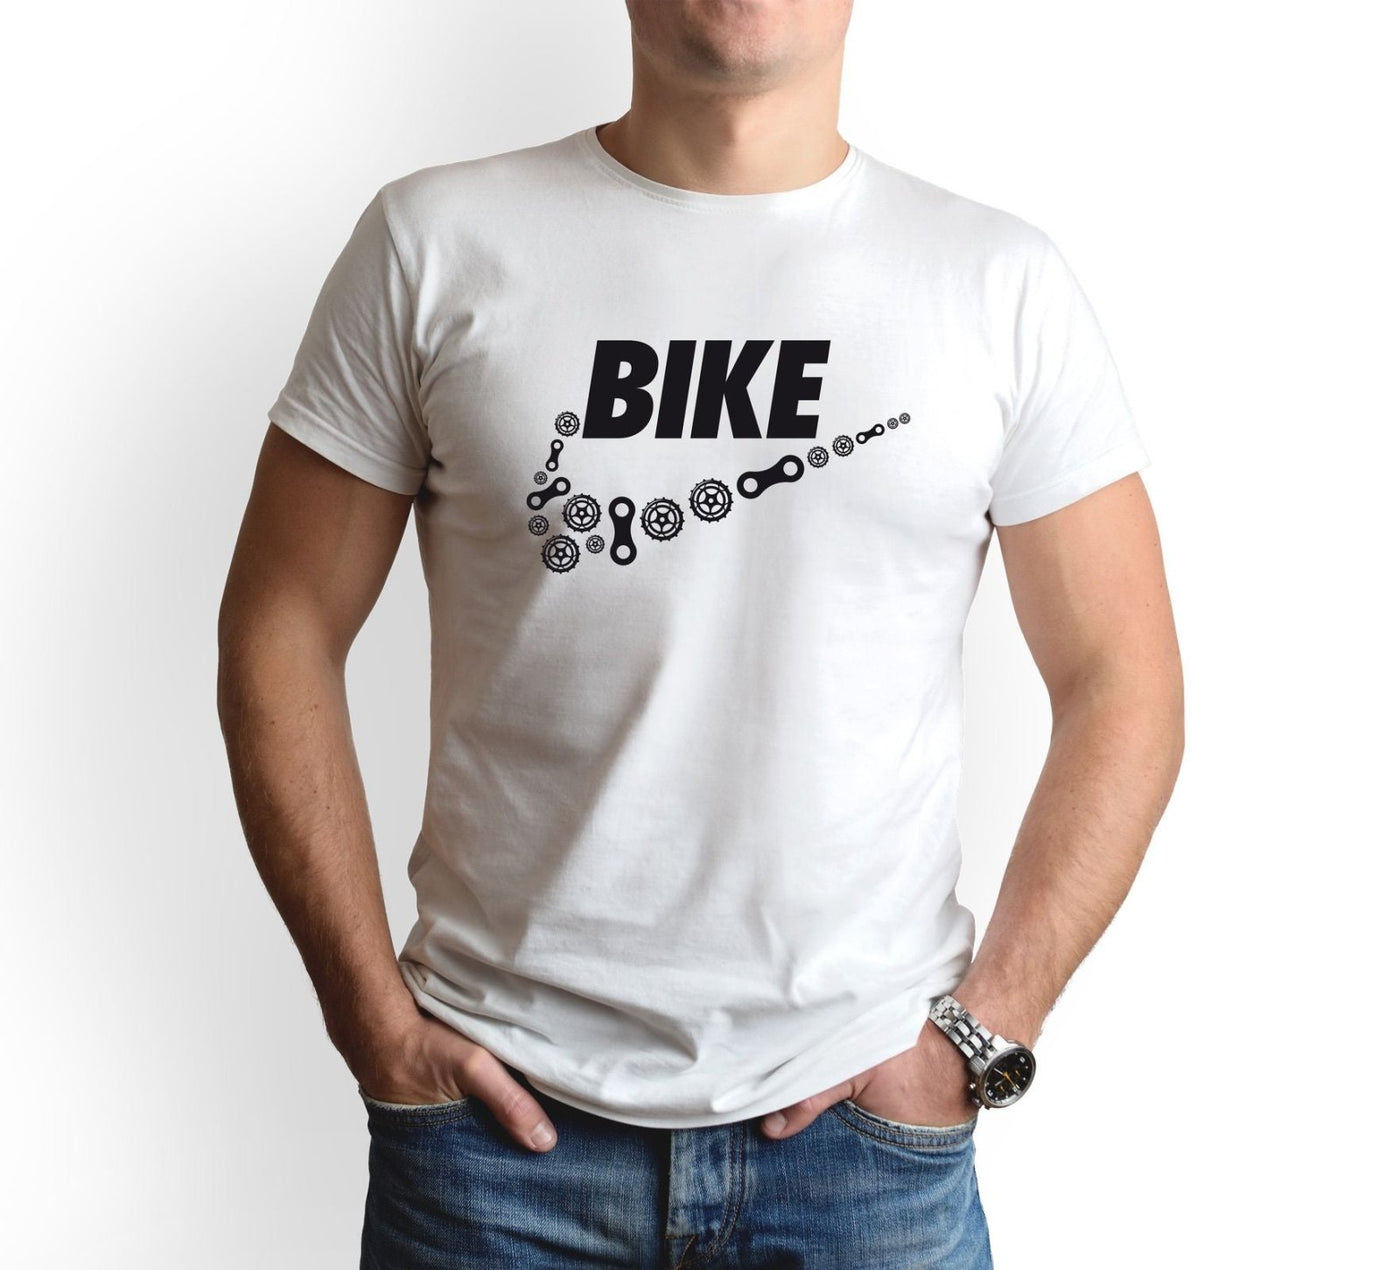 Bild: T-Shirt Herren - Bike Geschenkidee